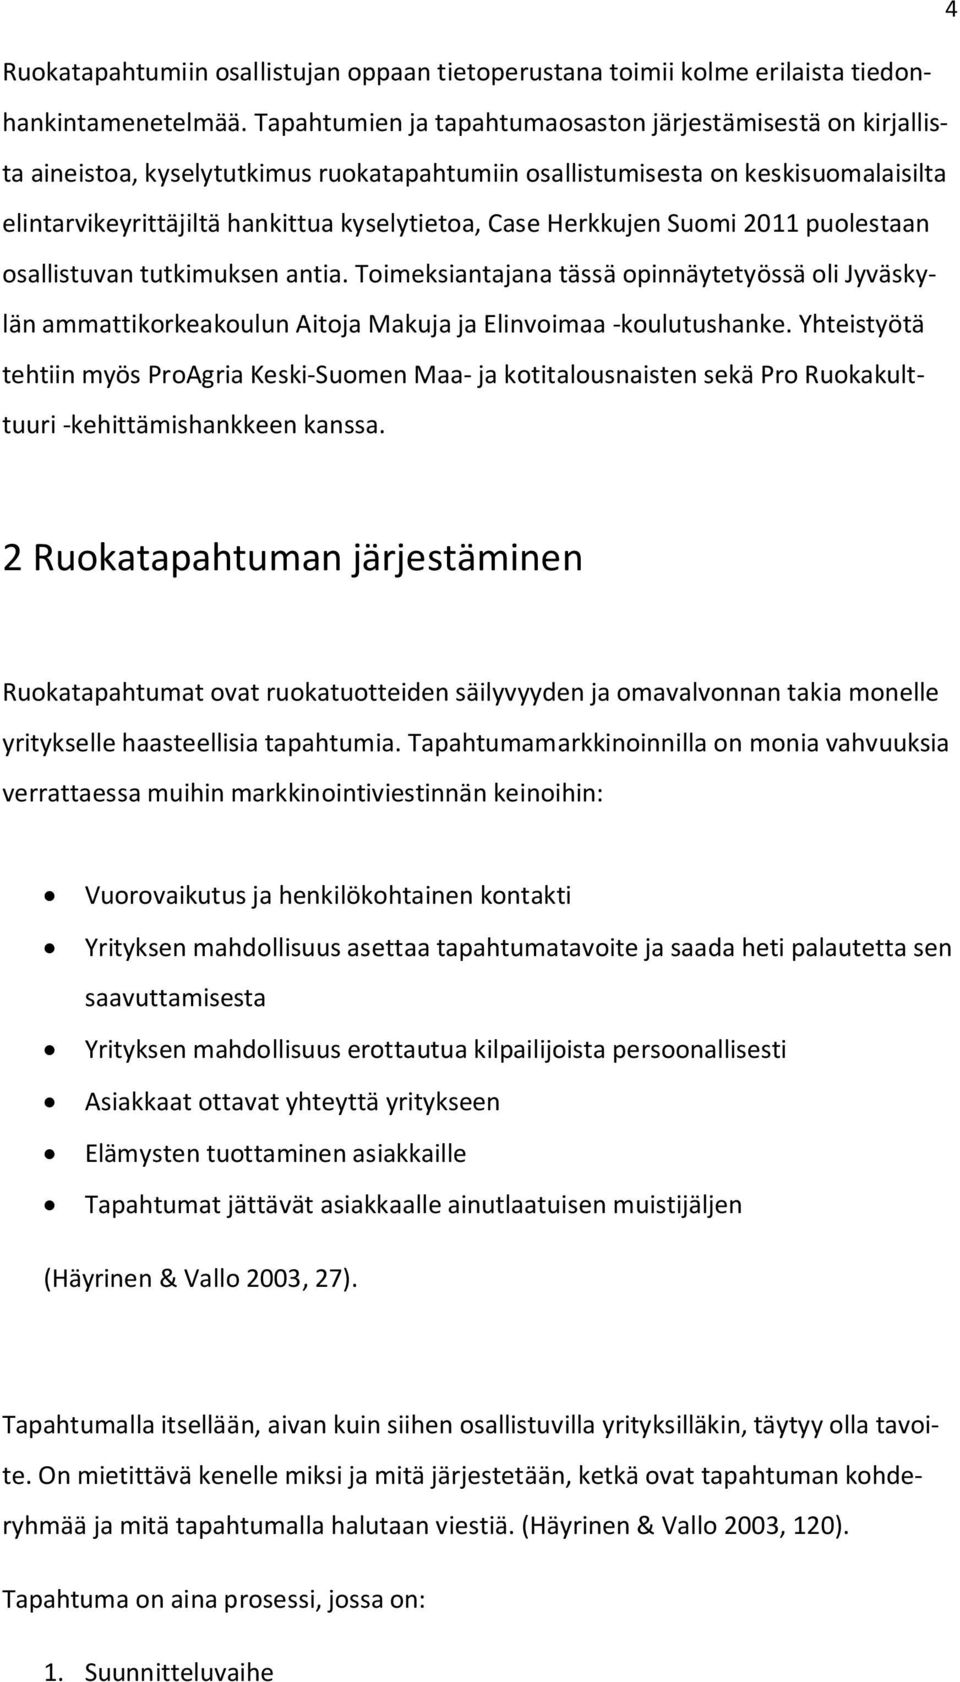 Herkkujen Suomi 2011 puolestaan osallistuvan tutkimuksen antia. Toimeksiantajana tässä opinnäytetyössä oli Jyväskylän ammattikorkeakoulun Aitoja Makuja ja Elinvoimaa -koulutushanke.